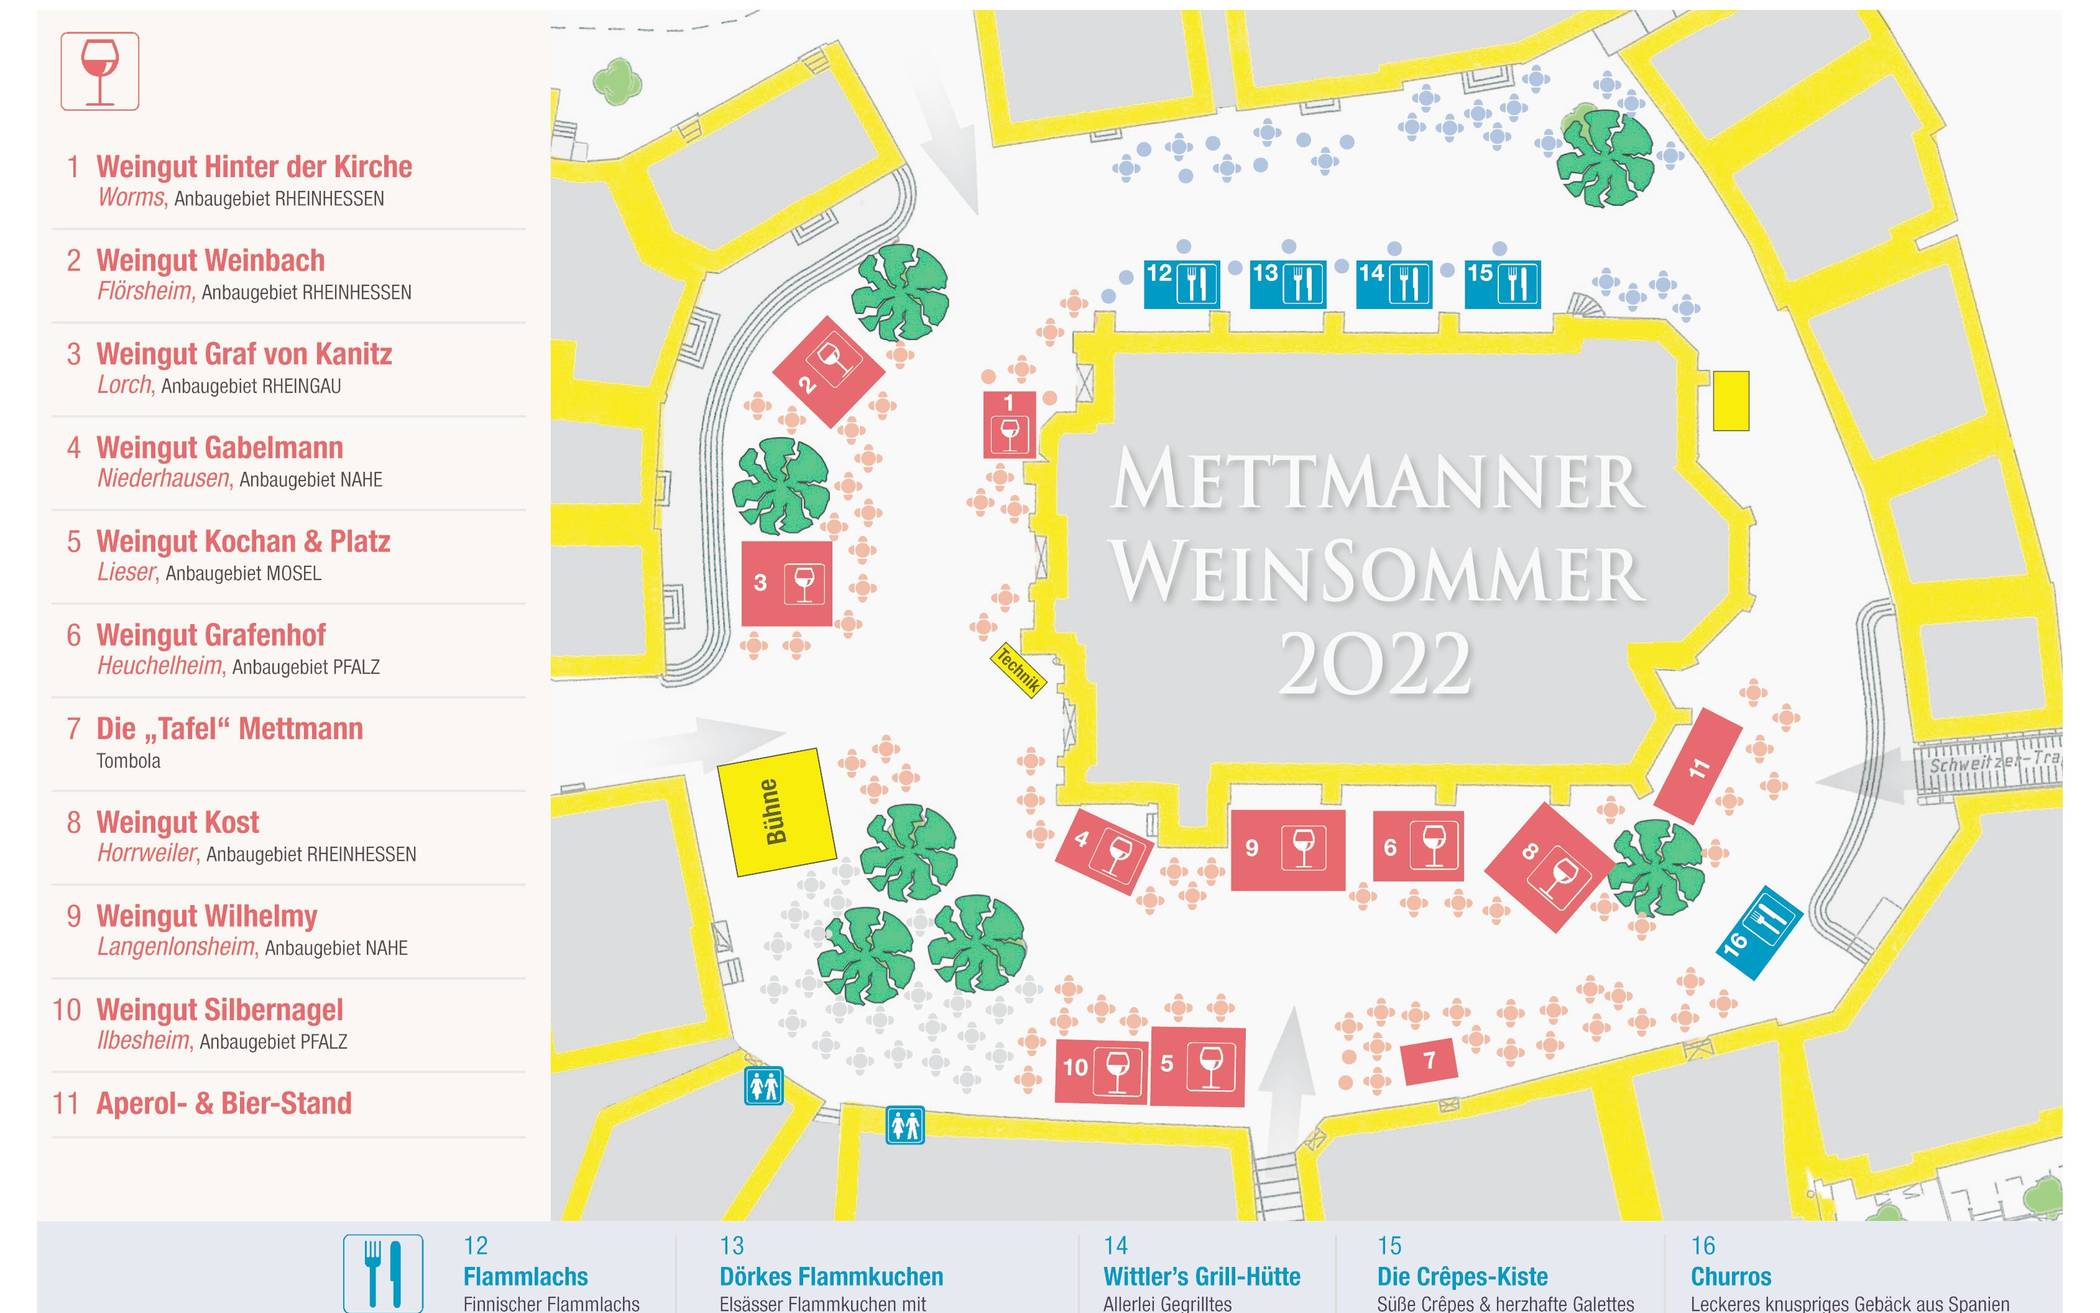 Mettmanner Weinsommer und Mettmanner Kunstmeile: Ein Wochenende für maximalen Genuss